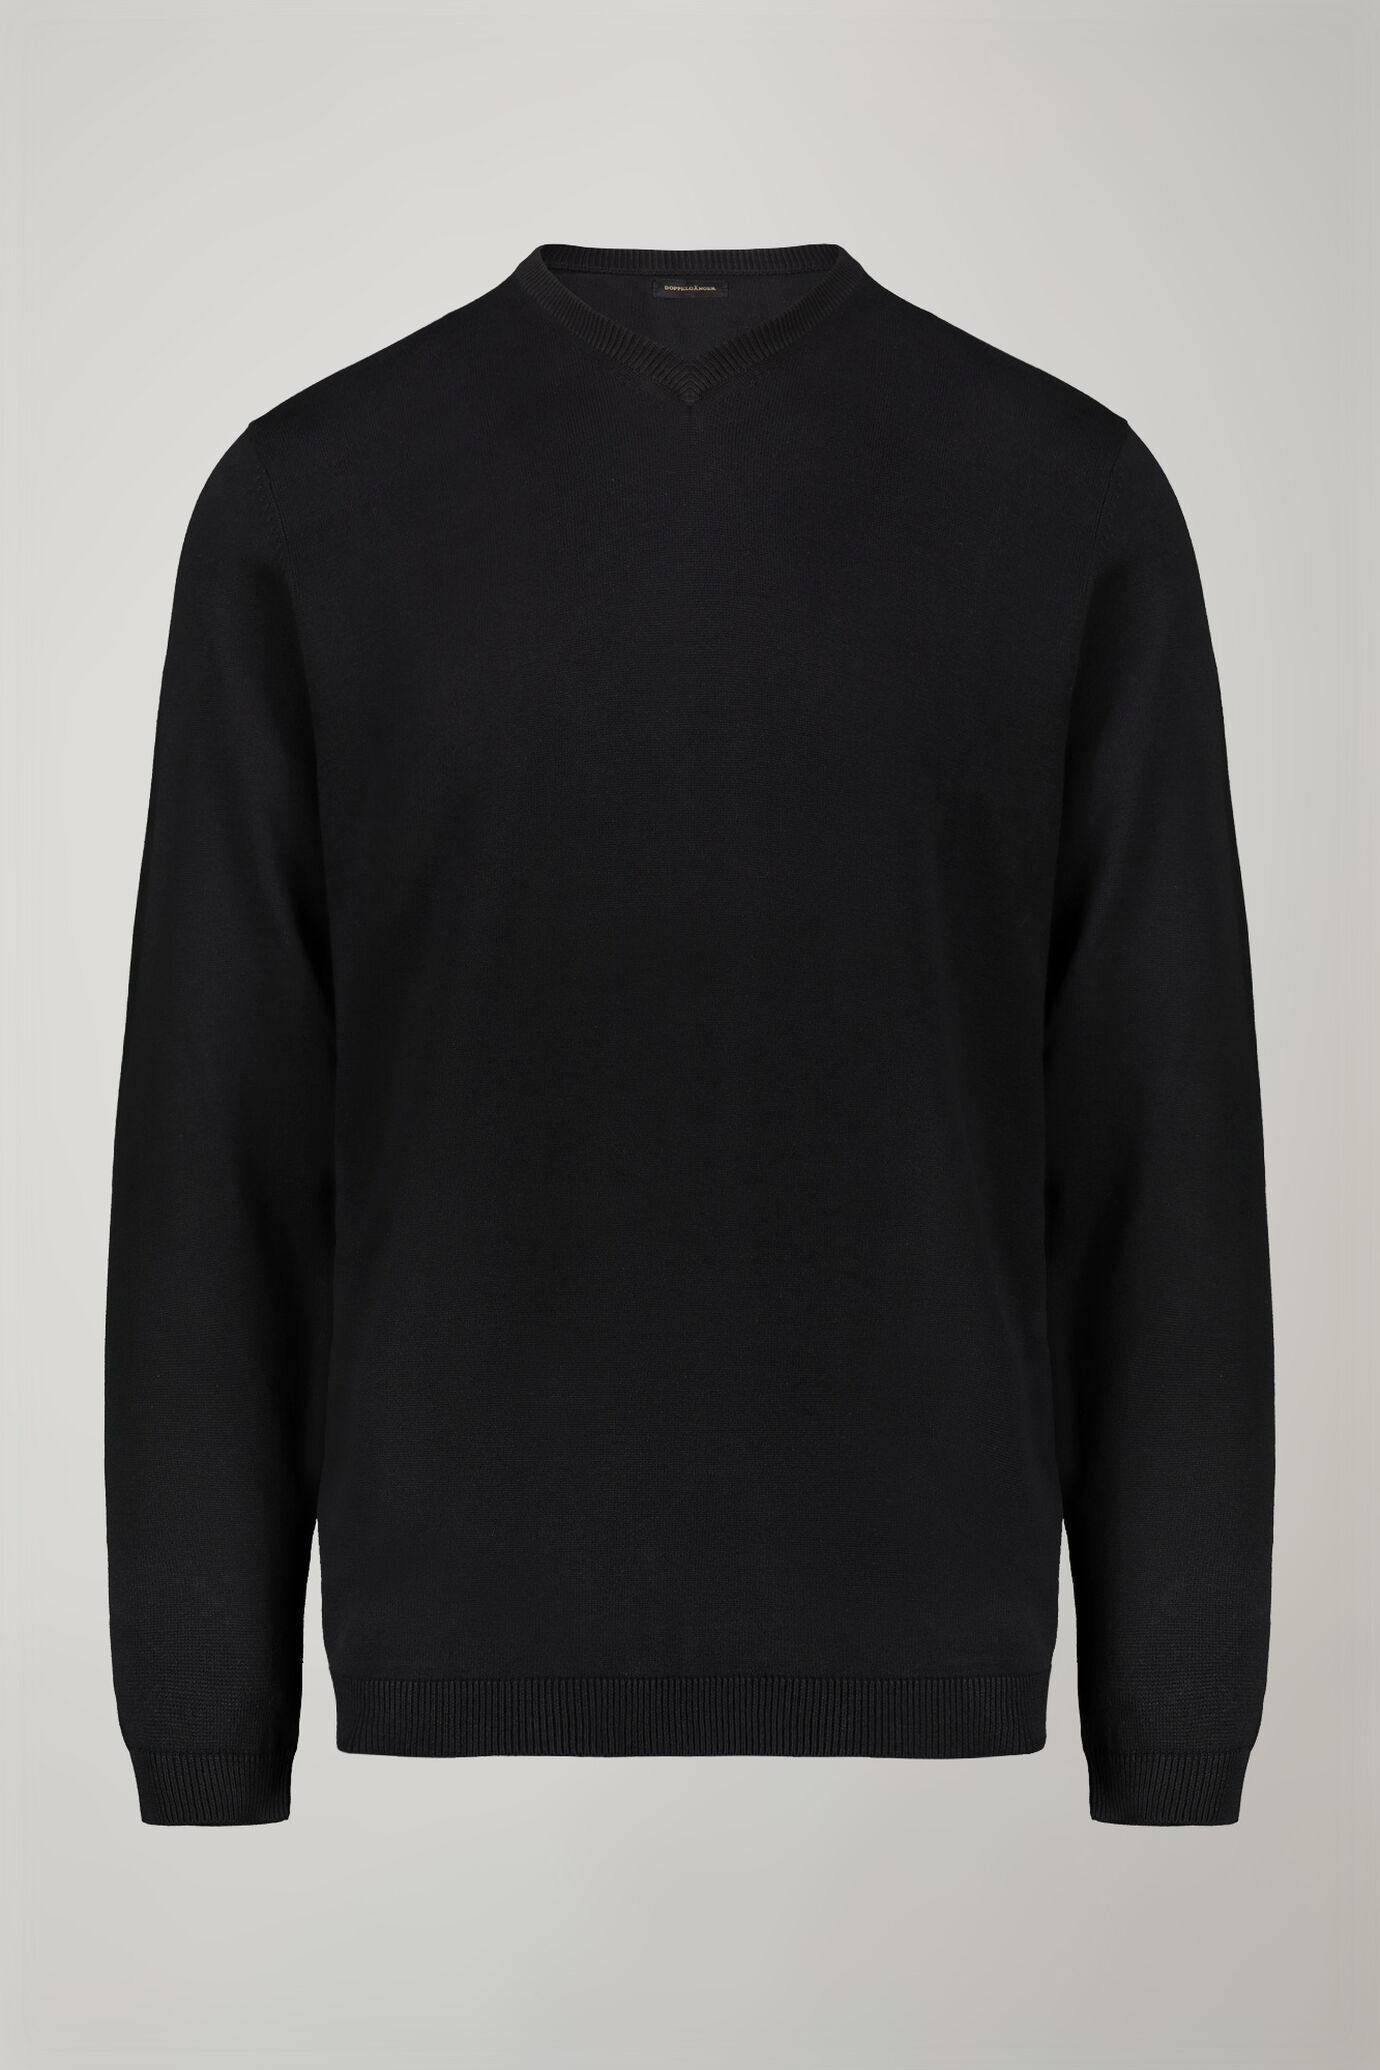 Men's v neck sweater 100% cotton regular fit image number 4